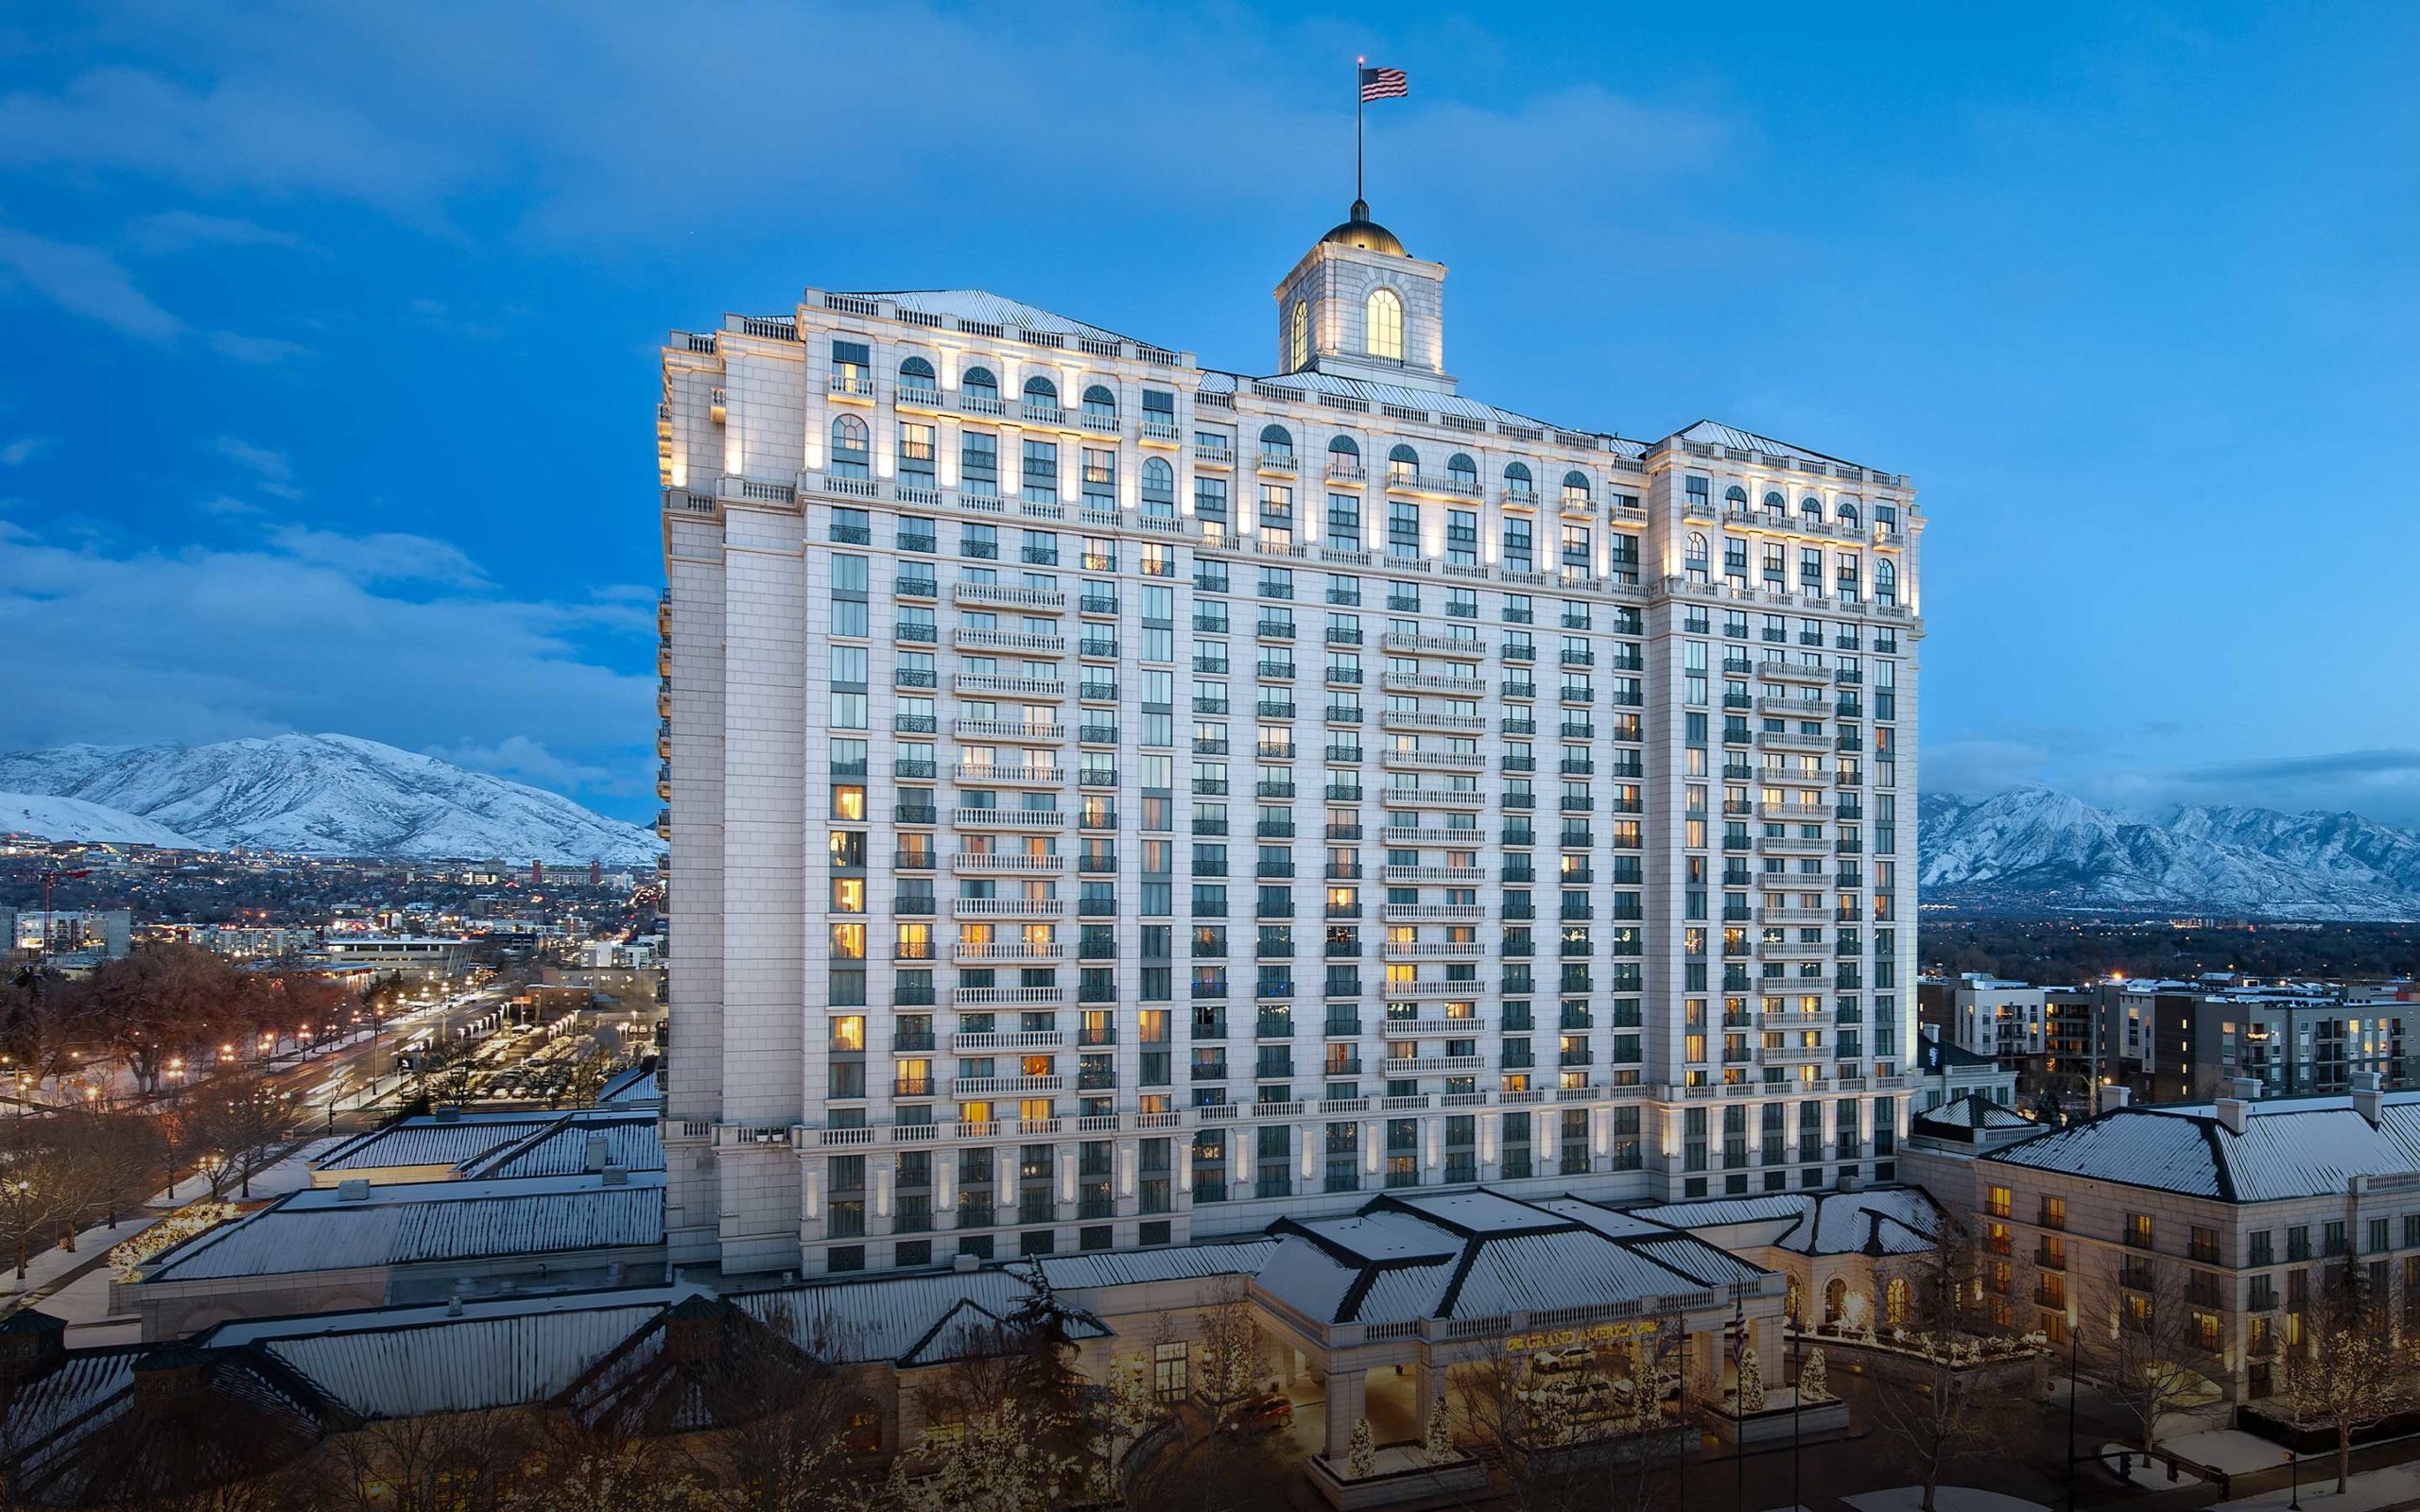 Winter view of The Grand America Hotel in Salt Lake City, Utah